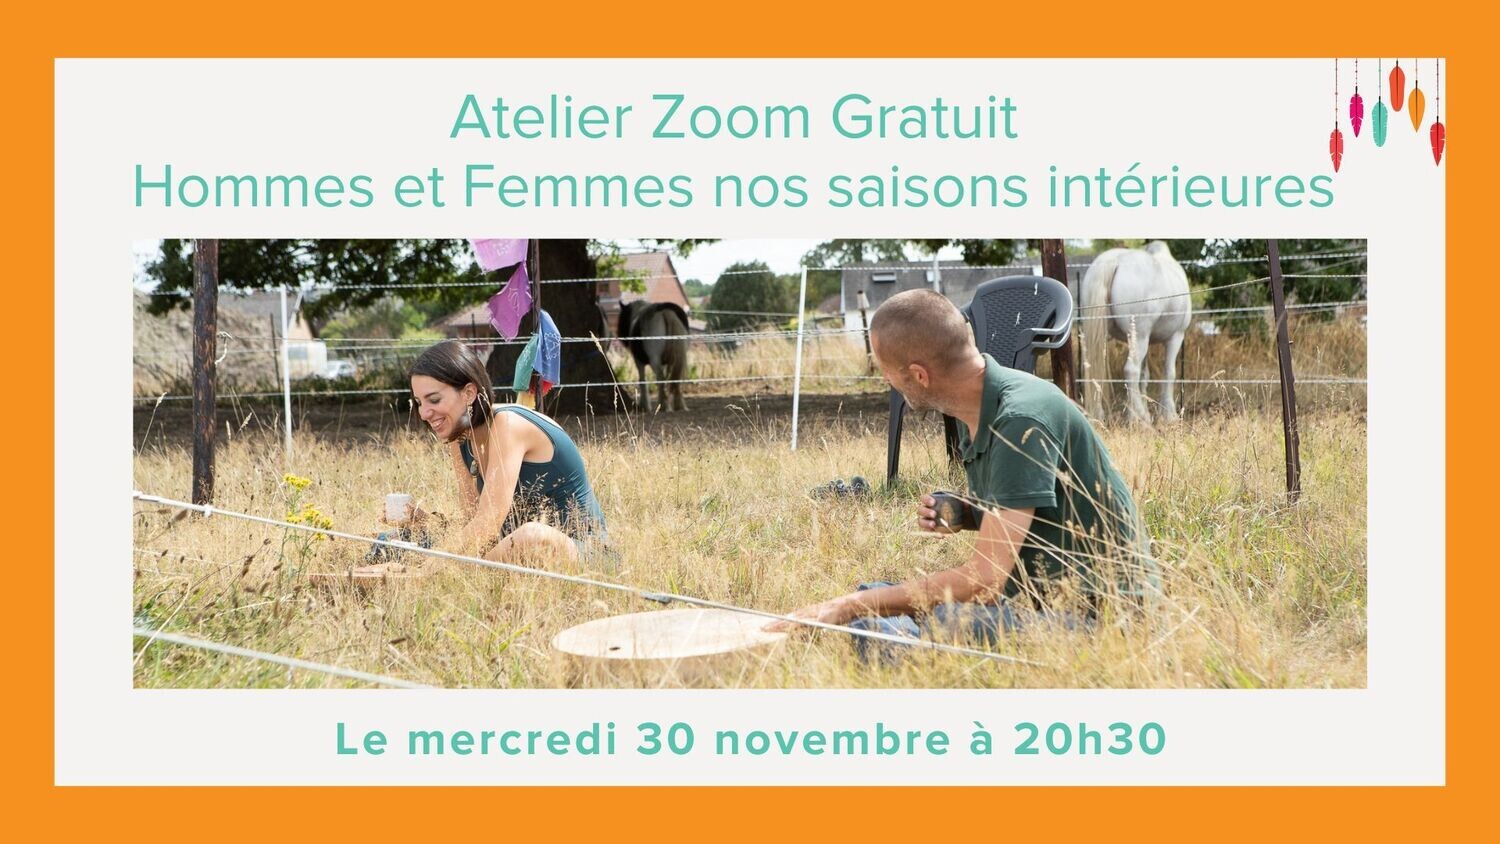 ZOOM GRATUIT - 30/11 - 20h30
Hommes et Femmes nos saisons Intérieures